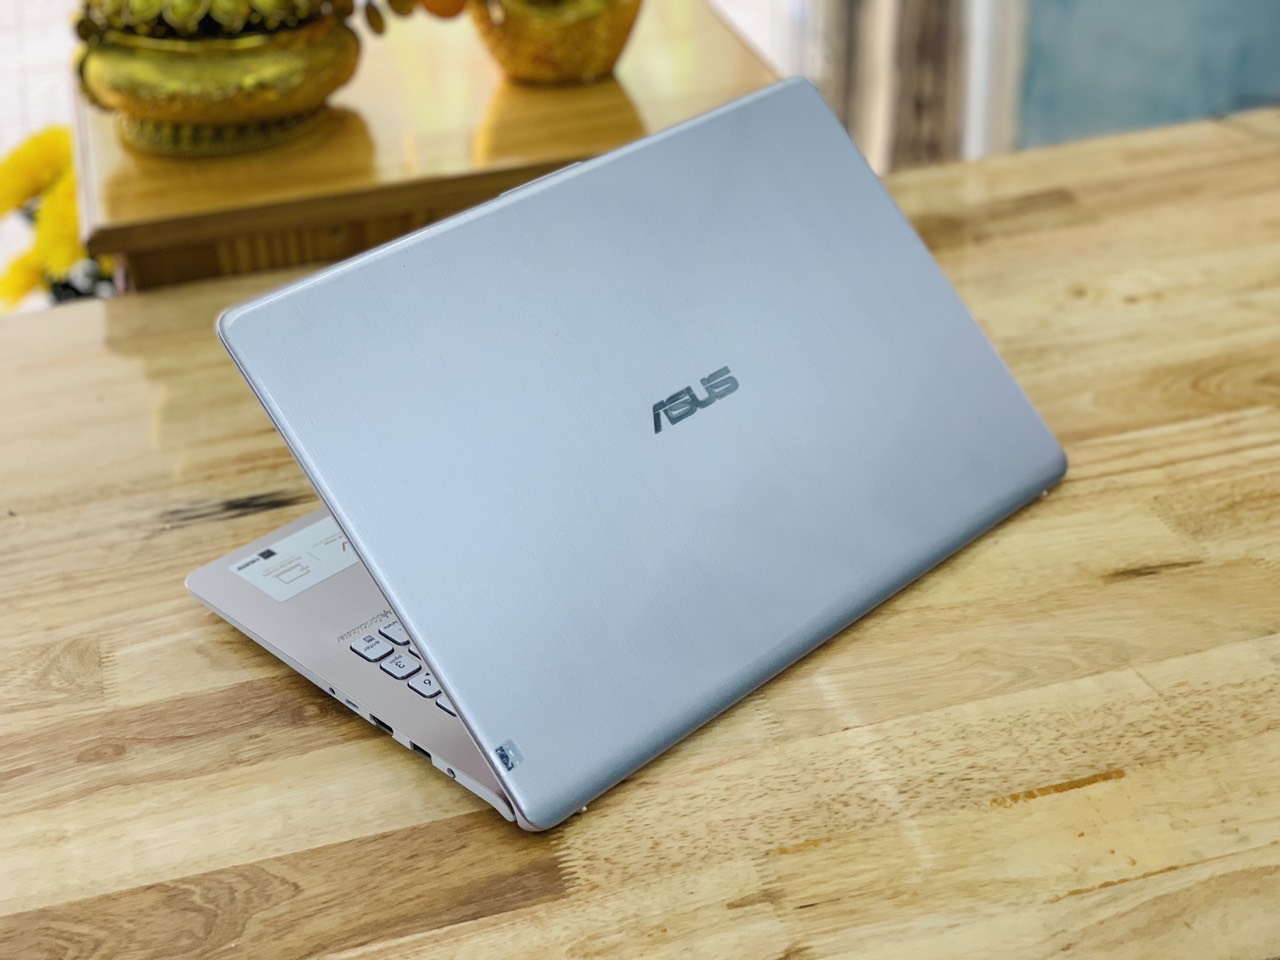 Asus Vivobook S15 X530U i5-8250U i5 Ram 4GB HDD 1TB SSD 128GB NVIDIA MX150 15.6" Fhd Viền Mỏng Đẹp Keng